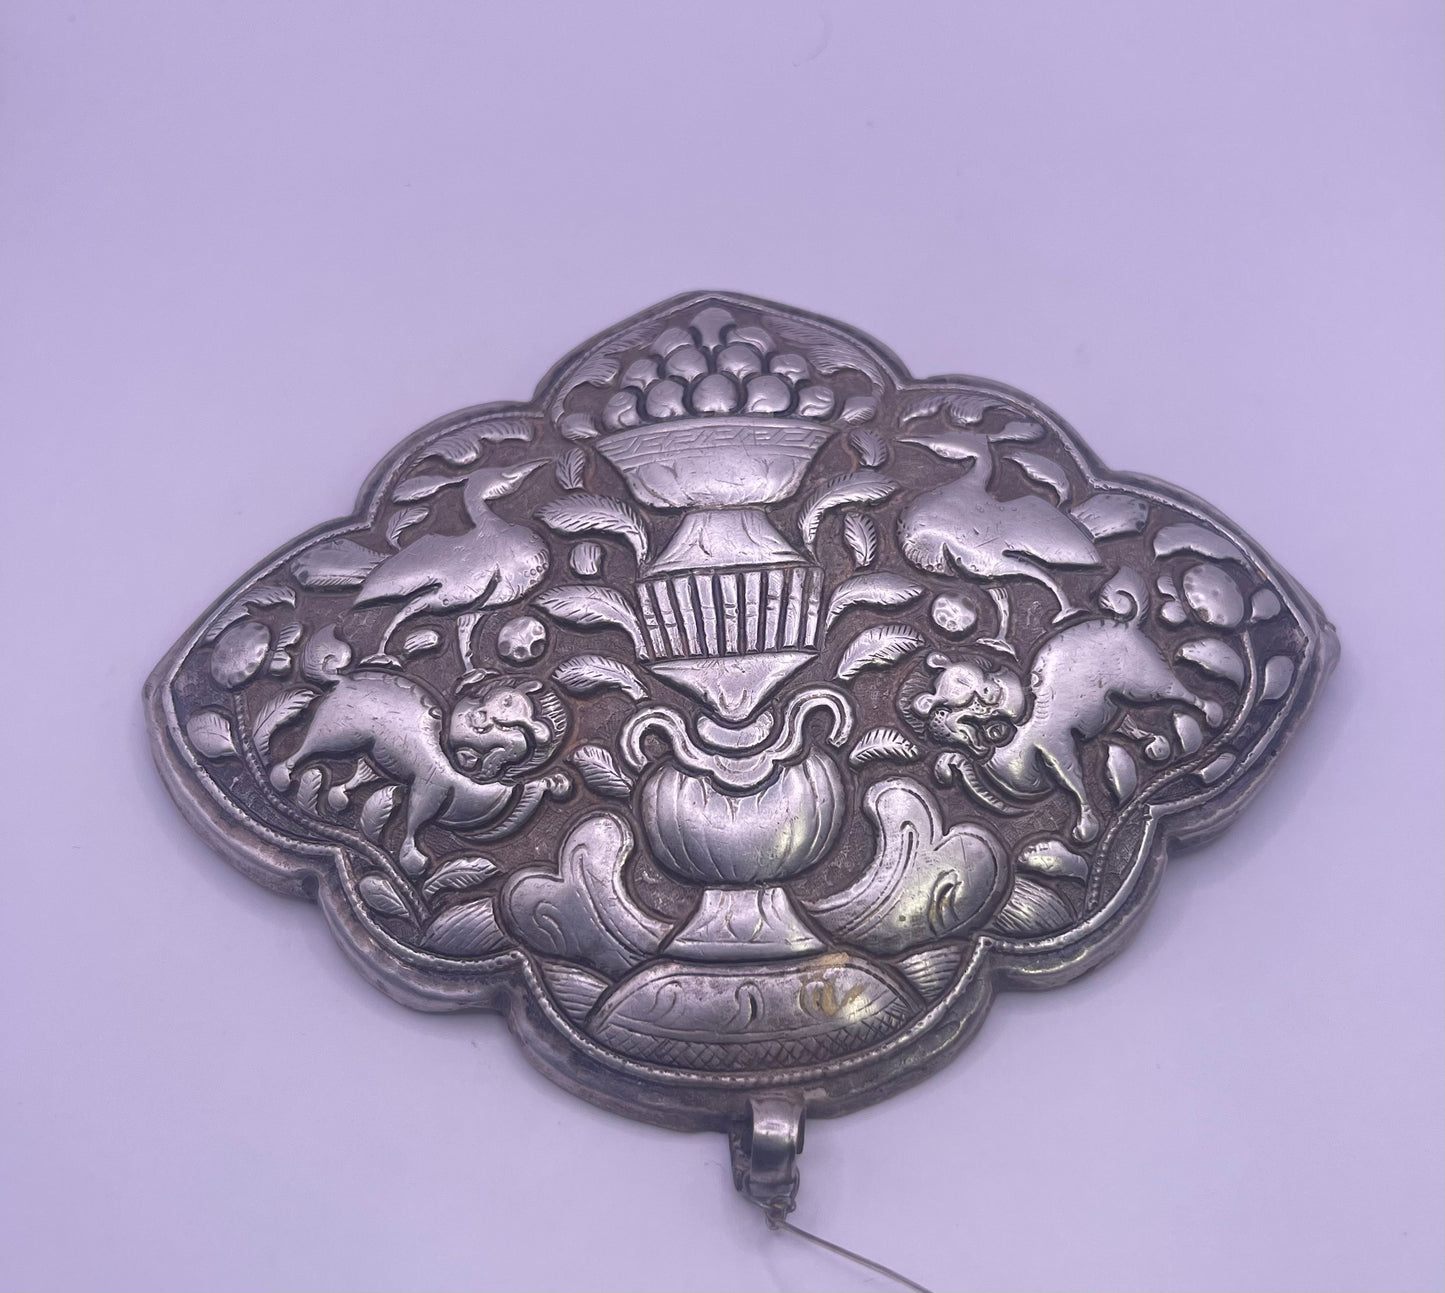 A large antique silver Tibetan apron clasp